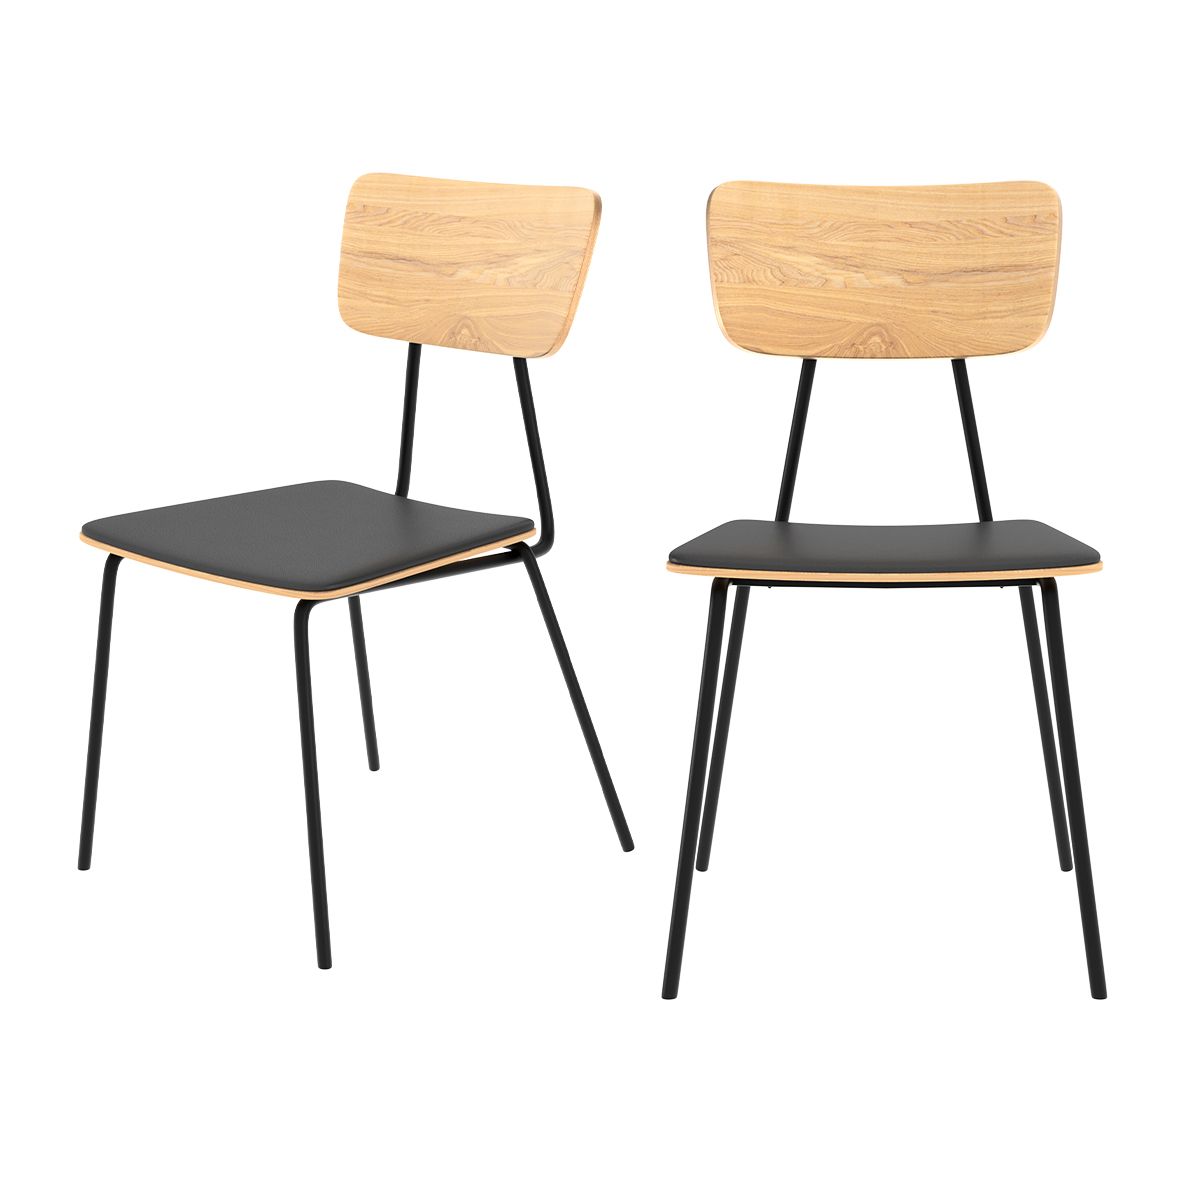 Chaise en bois clair, cuir synthétique et pieds métal noir (lot de 2)